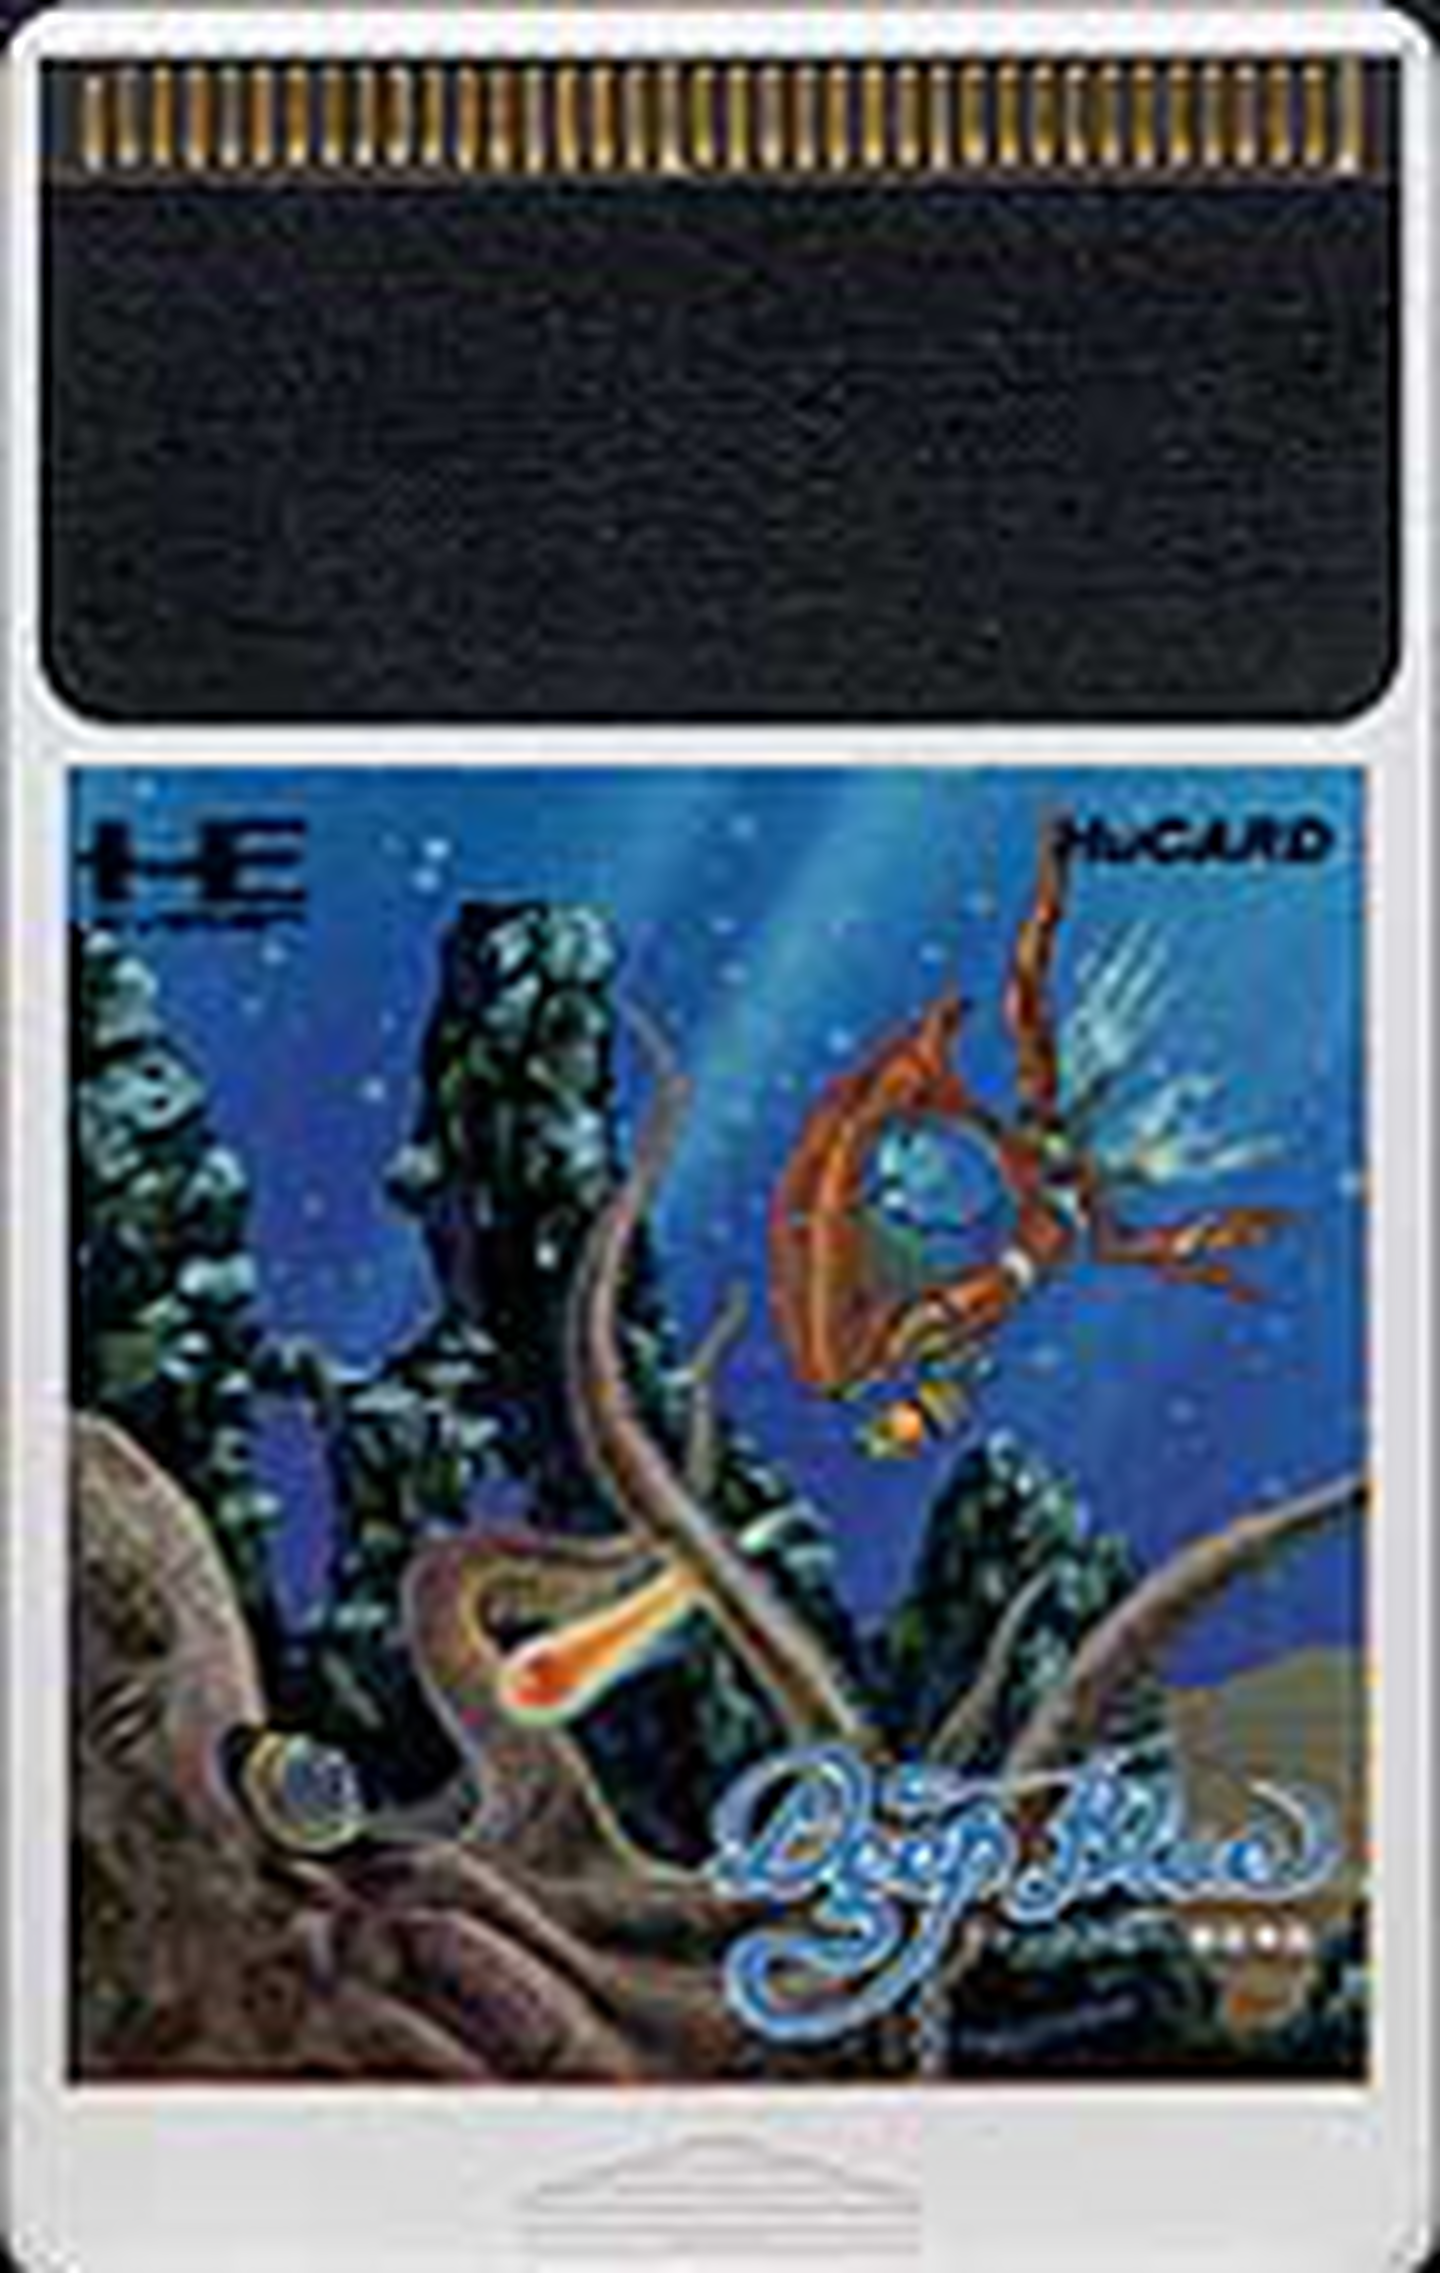 Tg16 GameBase Deep_Blue_-_Kaitei_Shinwa Pack-In-Video 1989